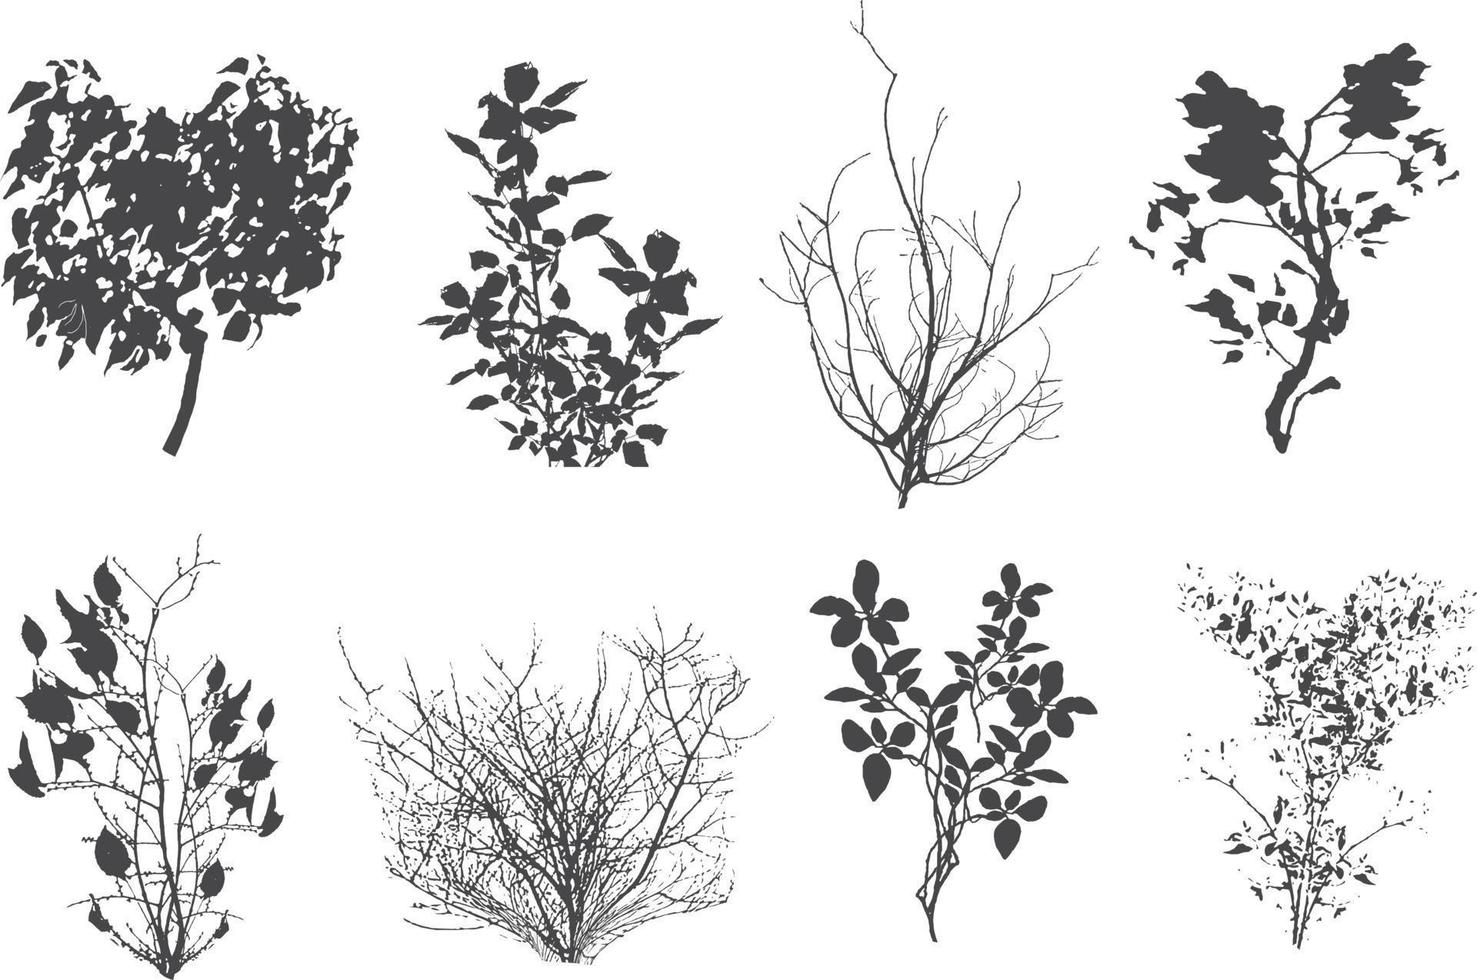 satz schwarzer zierpflanze in form einer hecke.realistischer gartenstrauch, saisonaler busch, buchsbaum, baumkronenbuschlaub. vektor